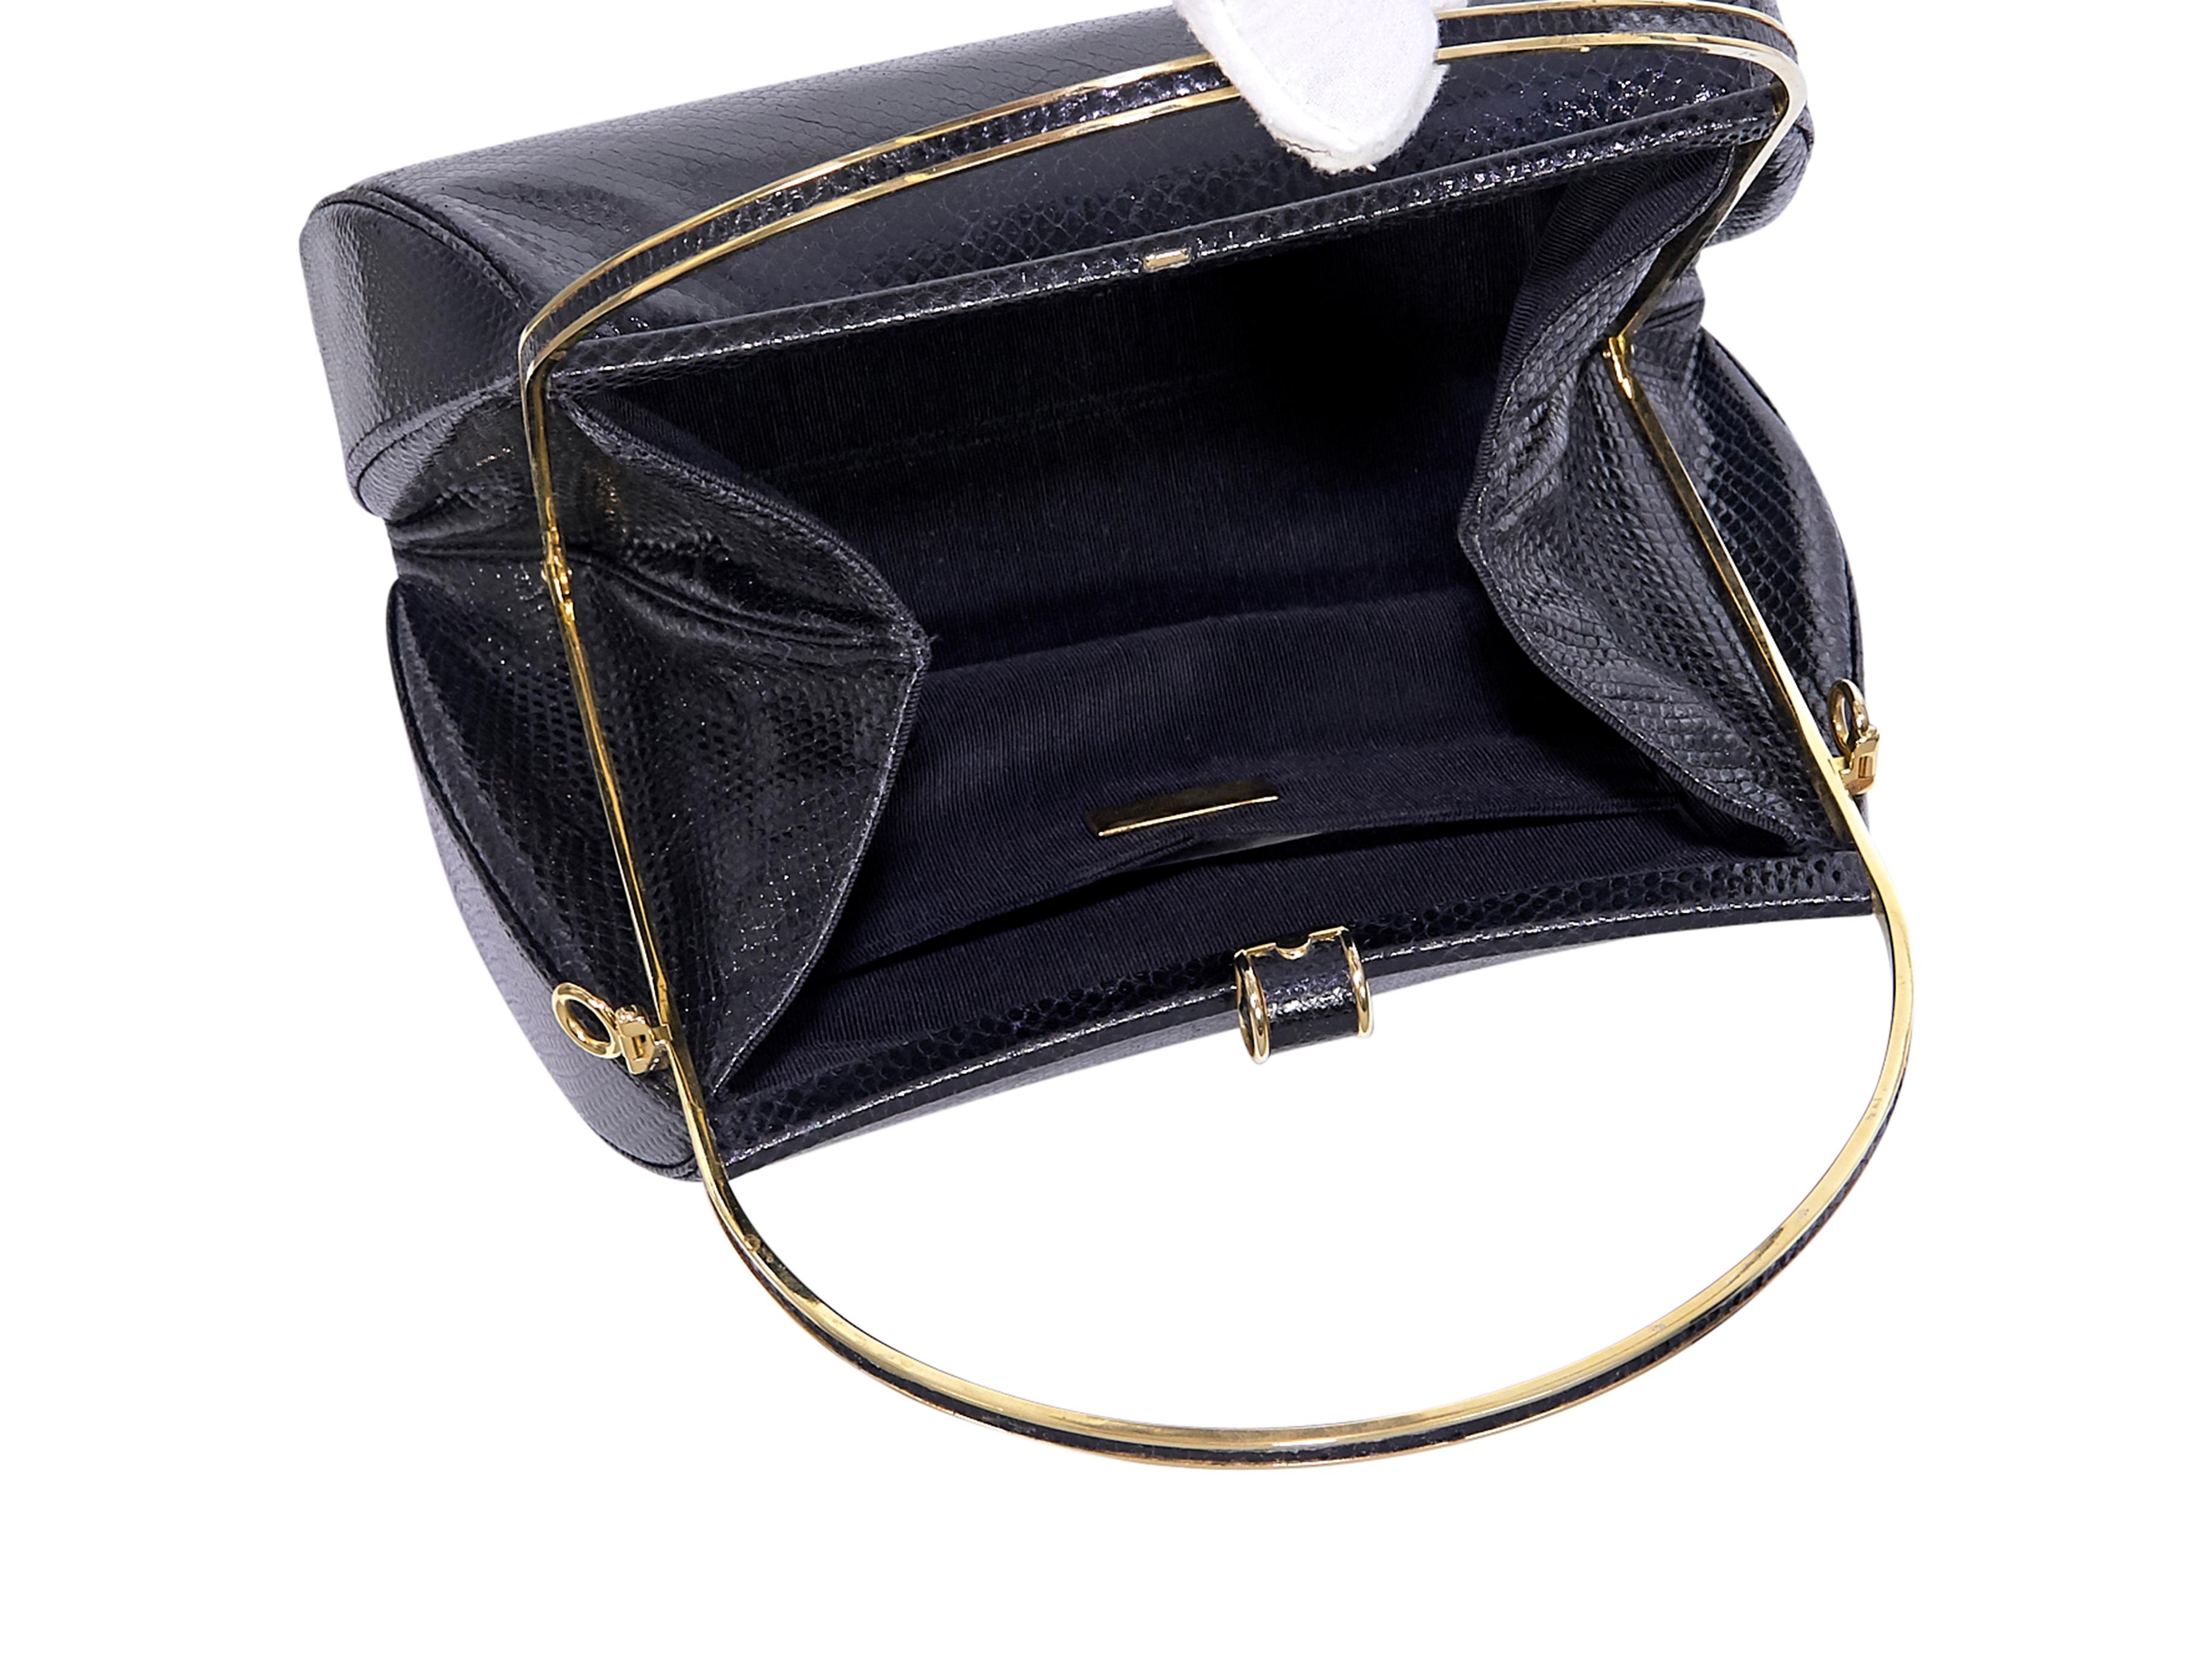 Judith Leiber Black Leather Snakeskin Handbag 1